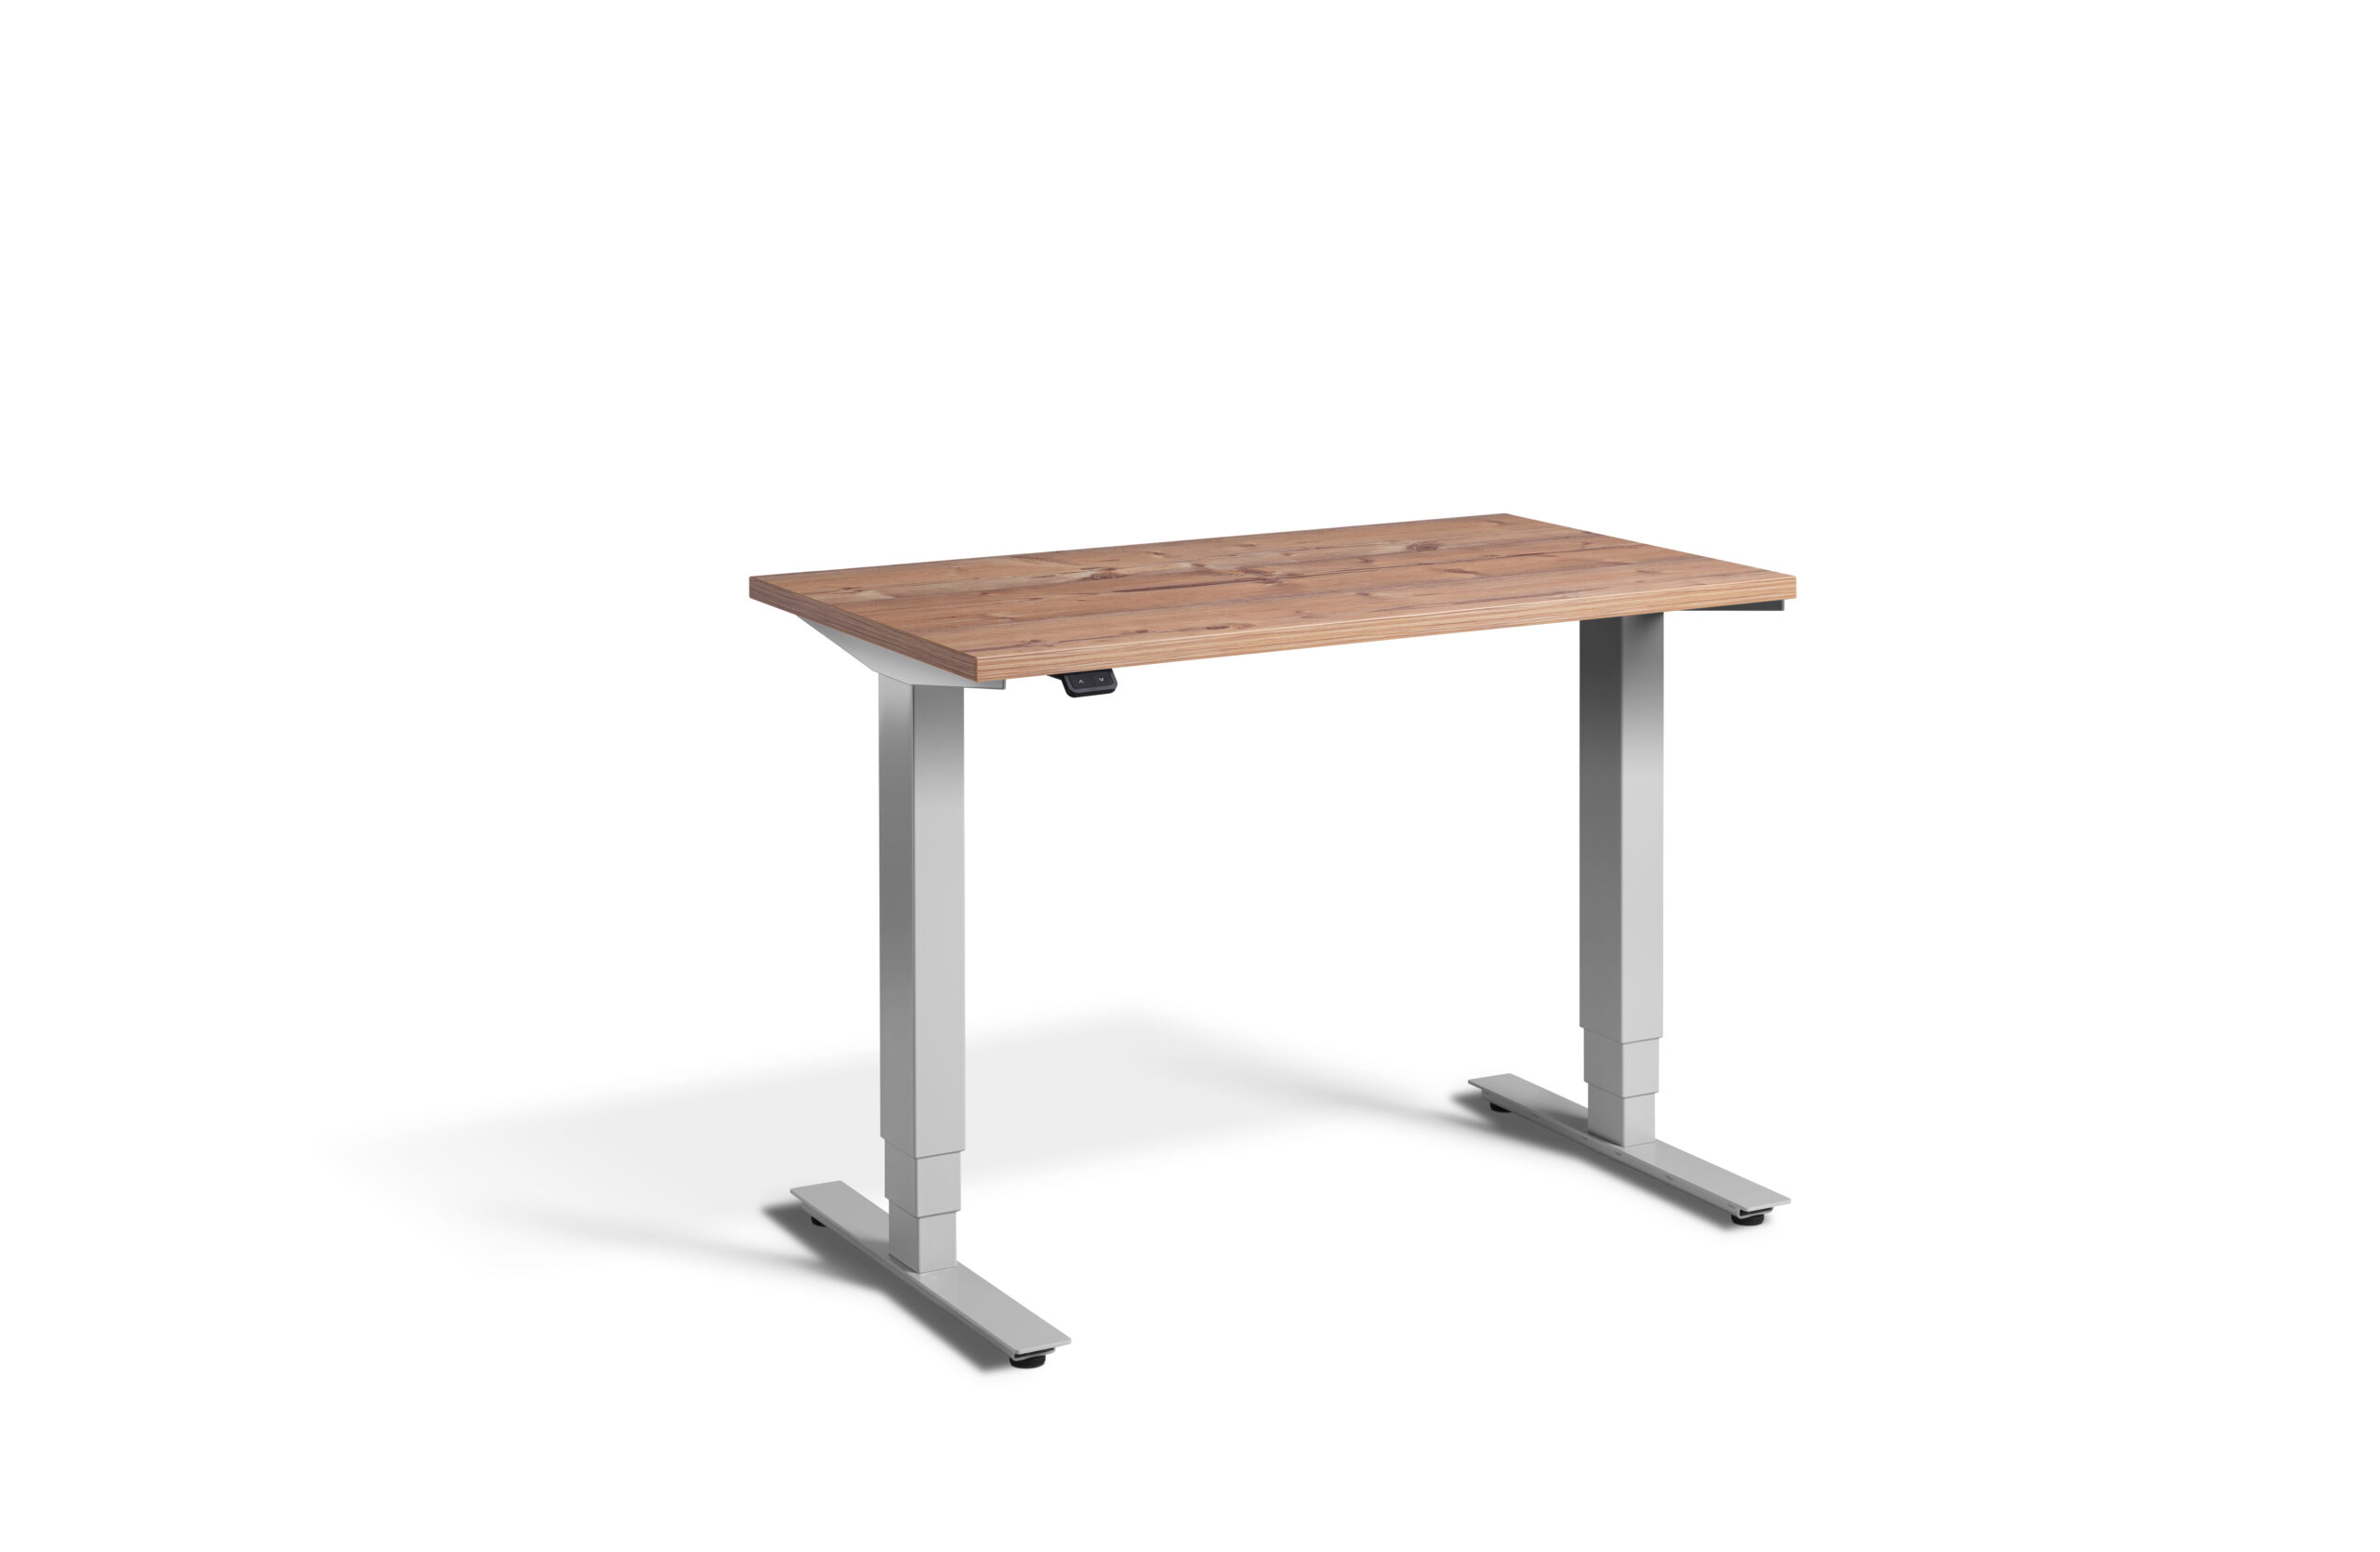 The Mini Desk - Height Adjustable Desk By Lavoro Design